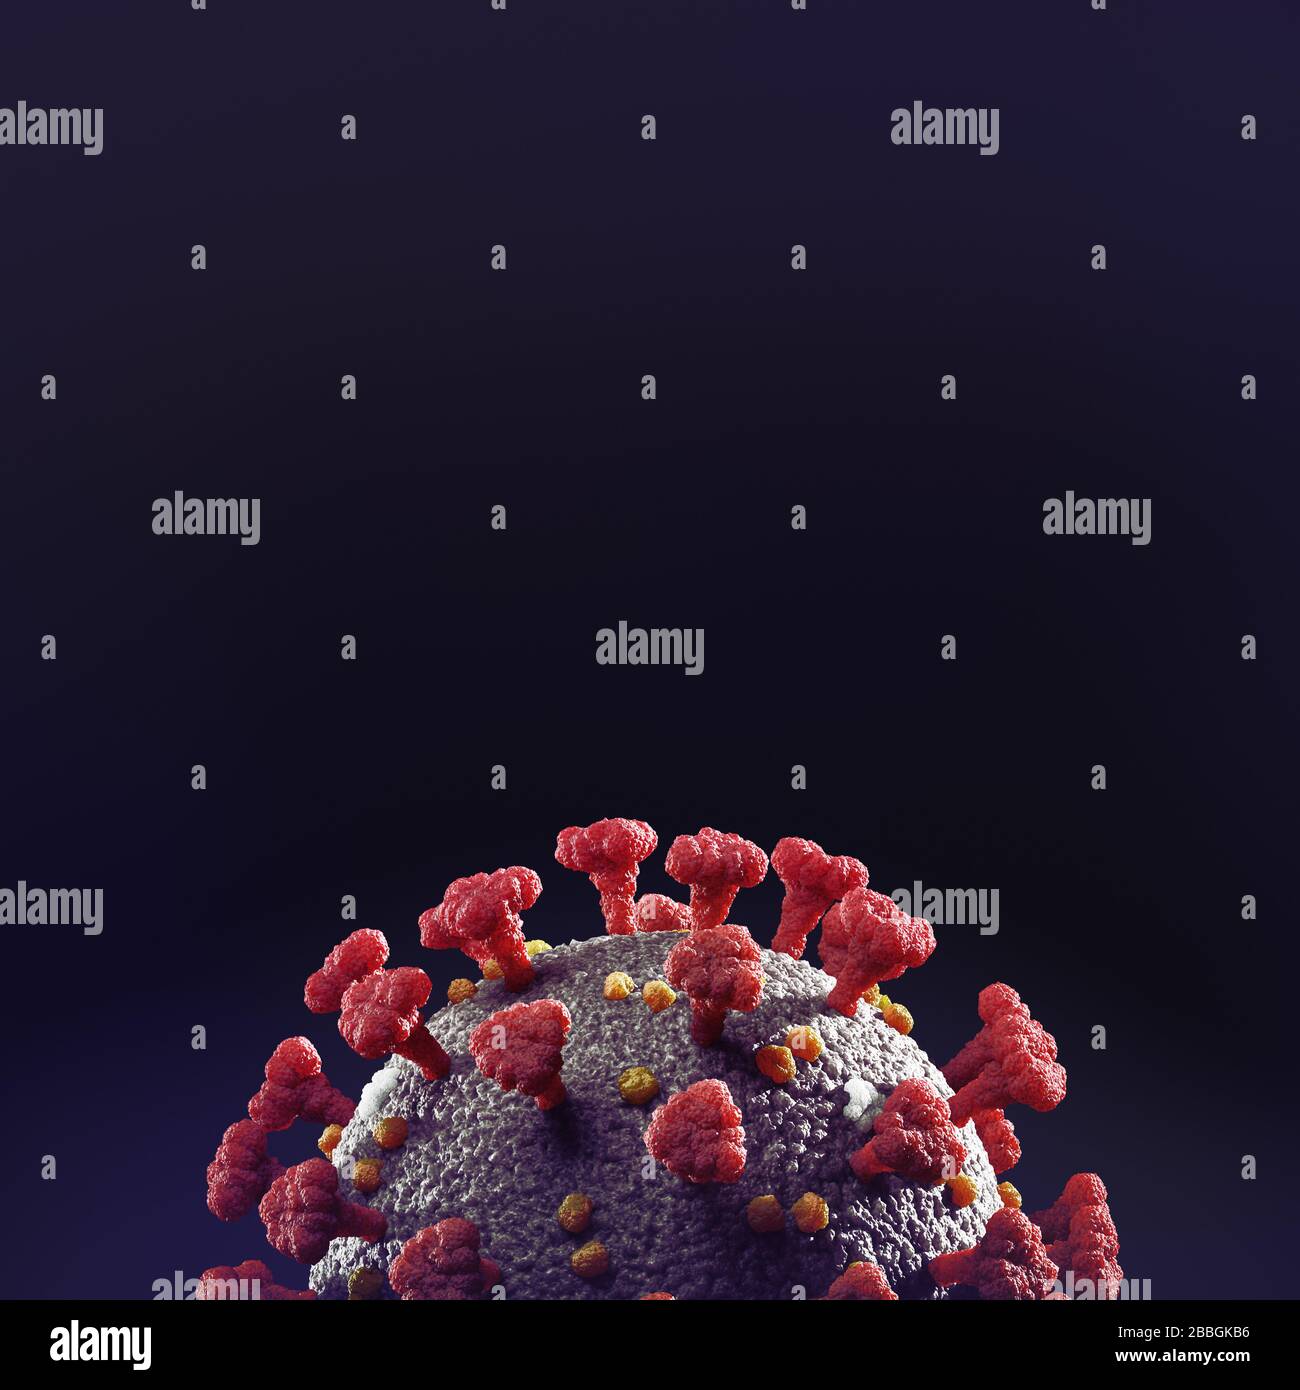 Coronavirus, COVID-19, SARS-COV-2 Corona virus particella closeup. Illustrazione medica scientifica 3D in colore rosso isolato su sfondo nero con poliziotto Foto Stock